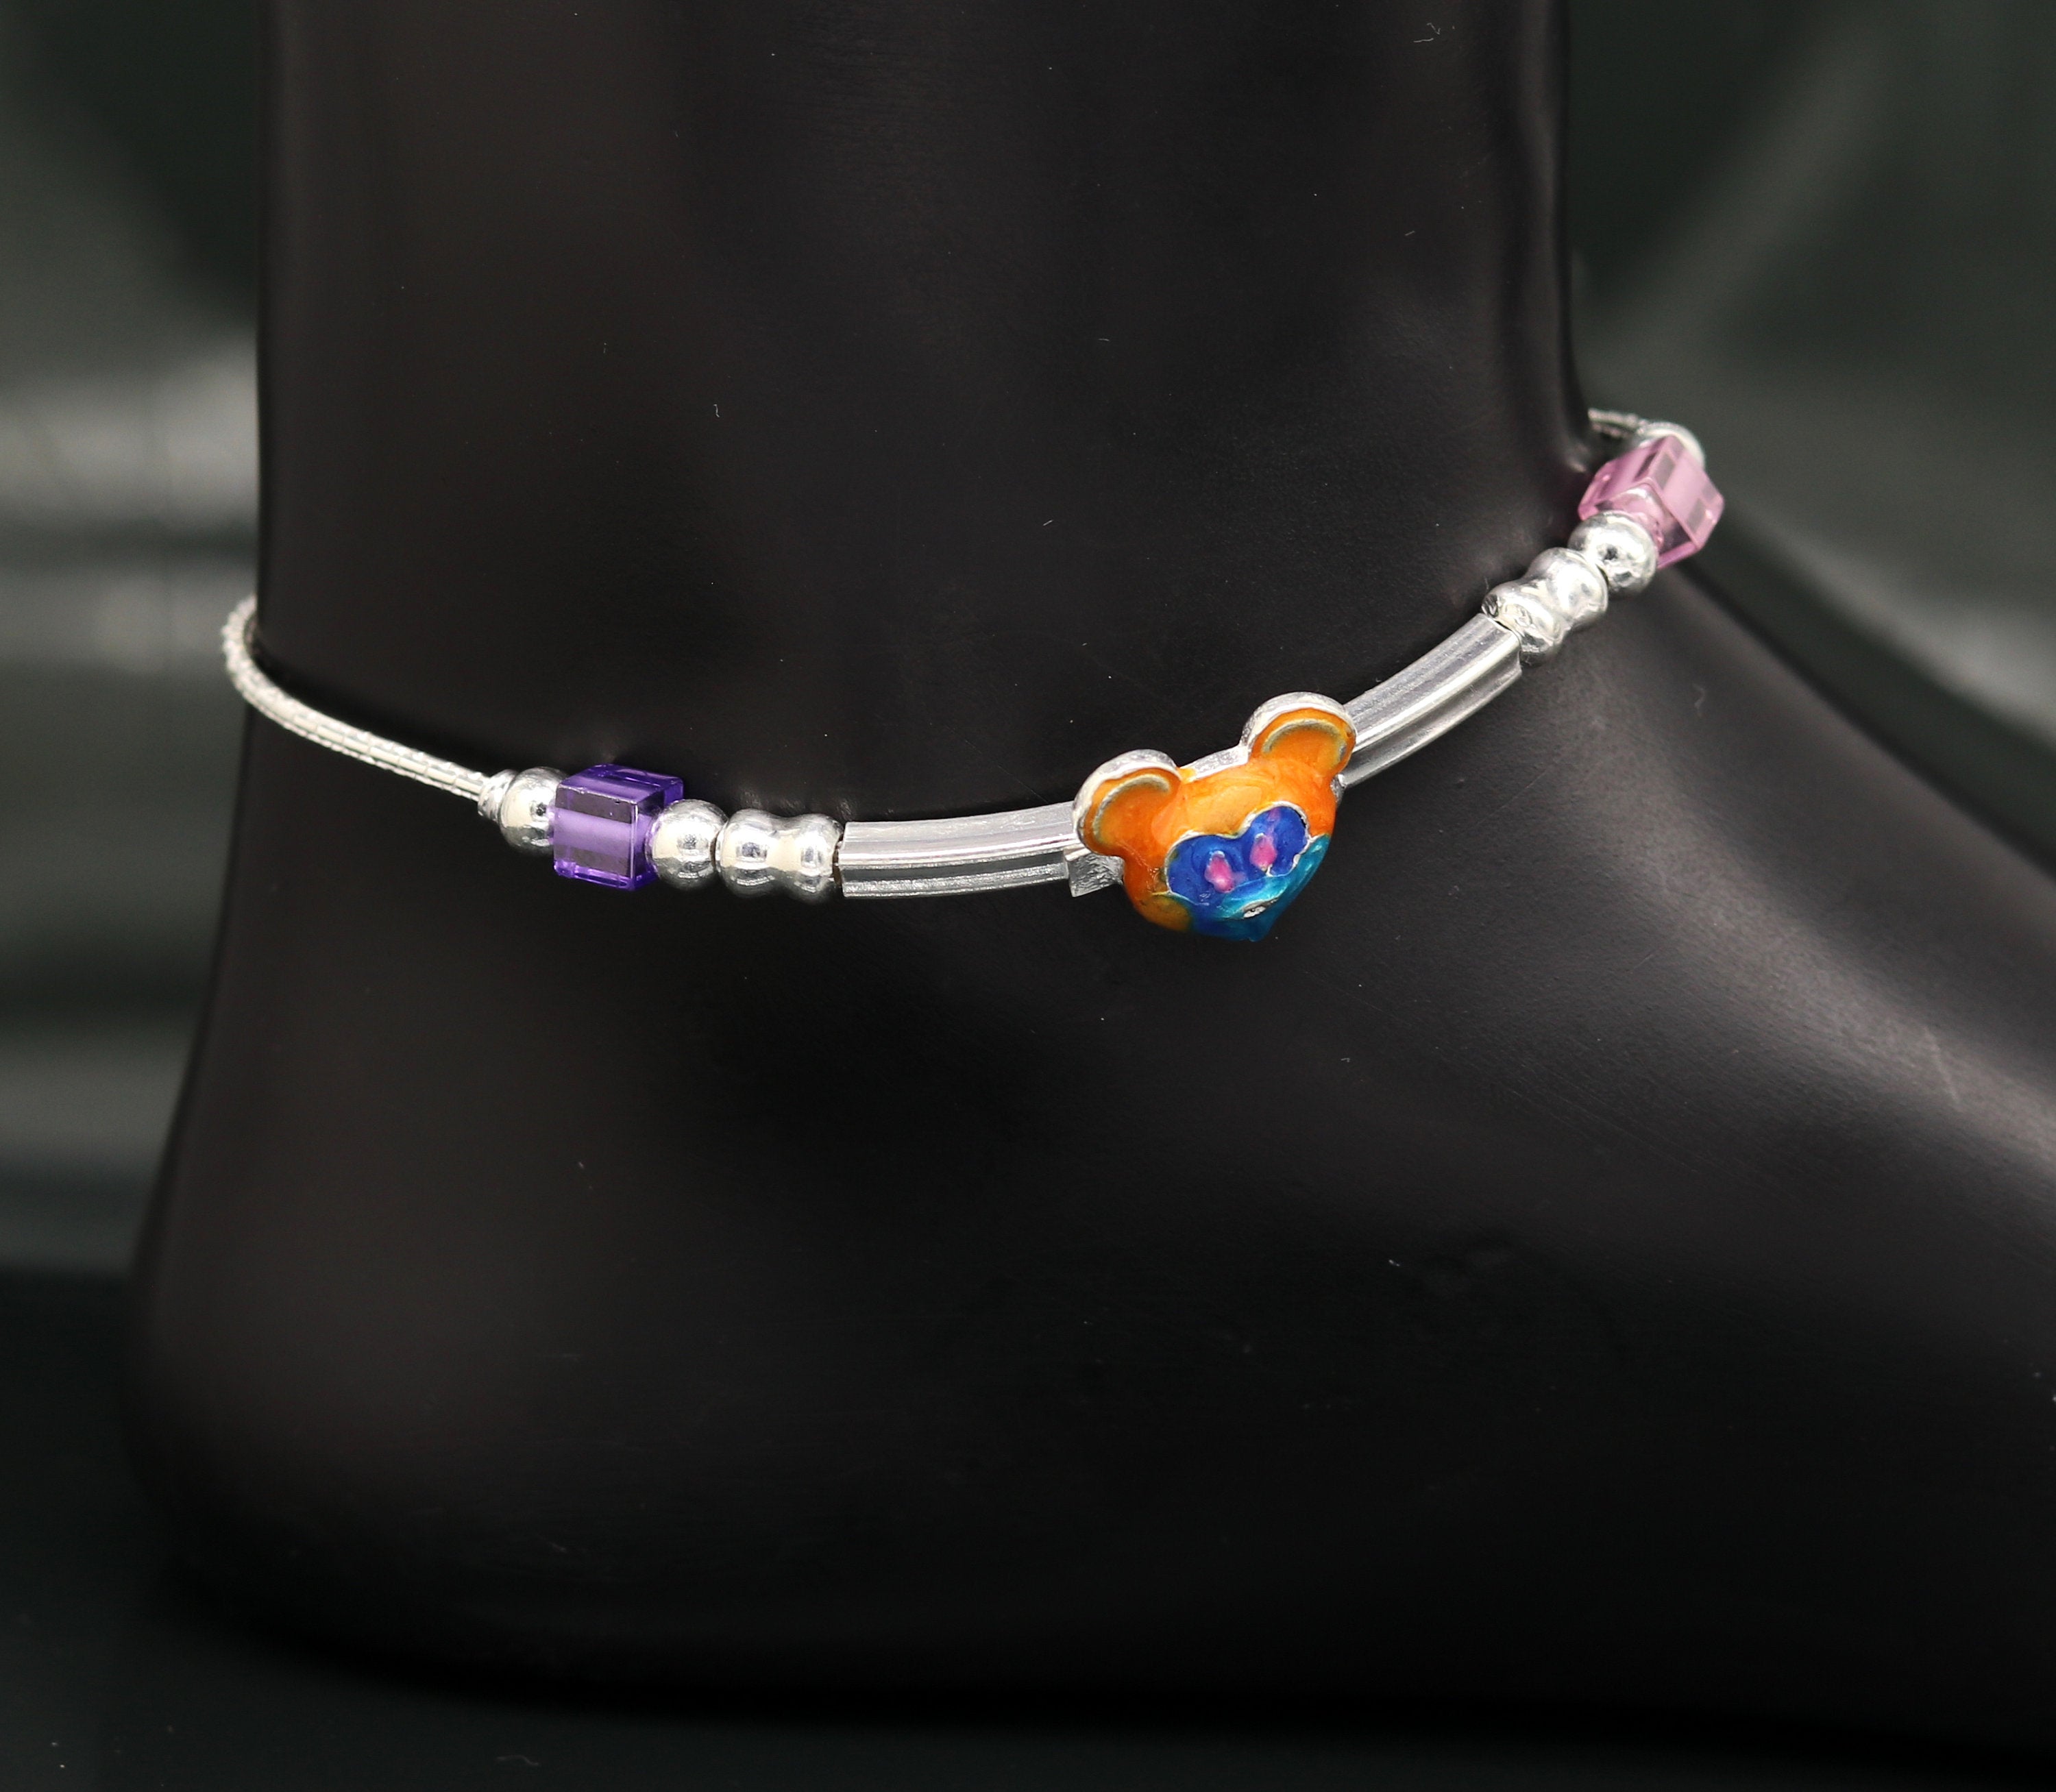 Pandora Bracelets For Girls | Silver Bell Charms Bracelet For Women's